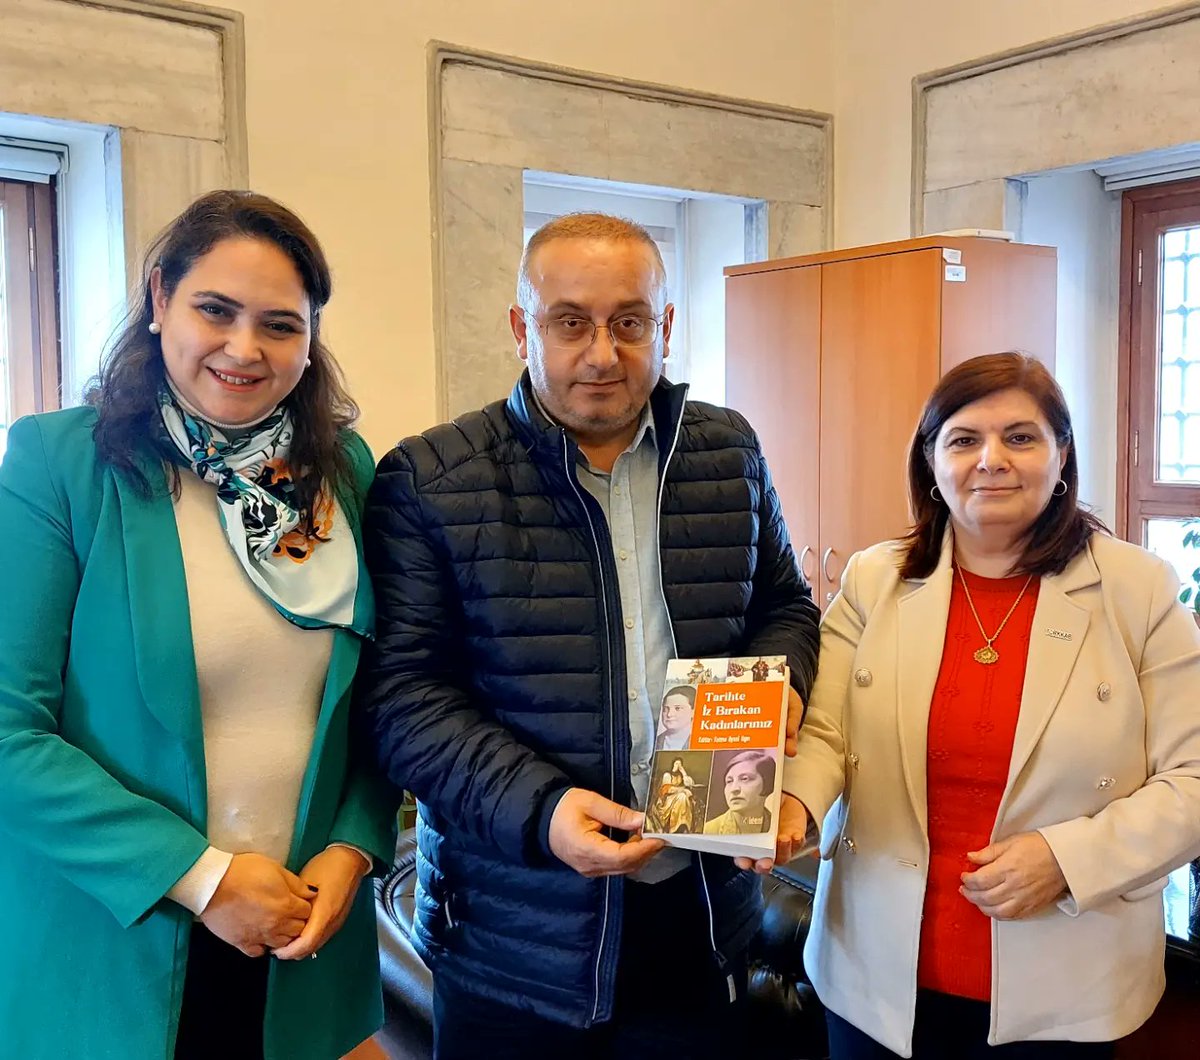 📍Bugün TÜRKKAB olarak İ.Ü. Türkiyat Araştırmaları Ens. Müdürlüğüne atanan Prof. Dr. Zişan Furat'a ve Müdür Yardımcısı olan Doç. Dr. Ömer Kul'a hayırlı olsun ziyaretinde bulunup kitaplarımızdan hediye ettik. 🇹🇷 @uydu_yucel @omerkul_61 @istanbuledutr @iuturkiyat